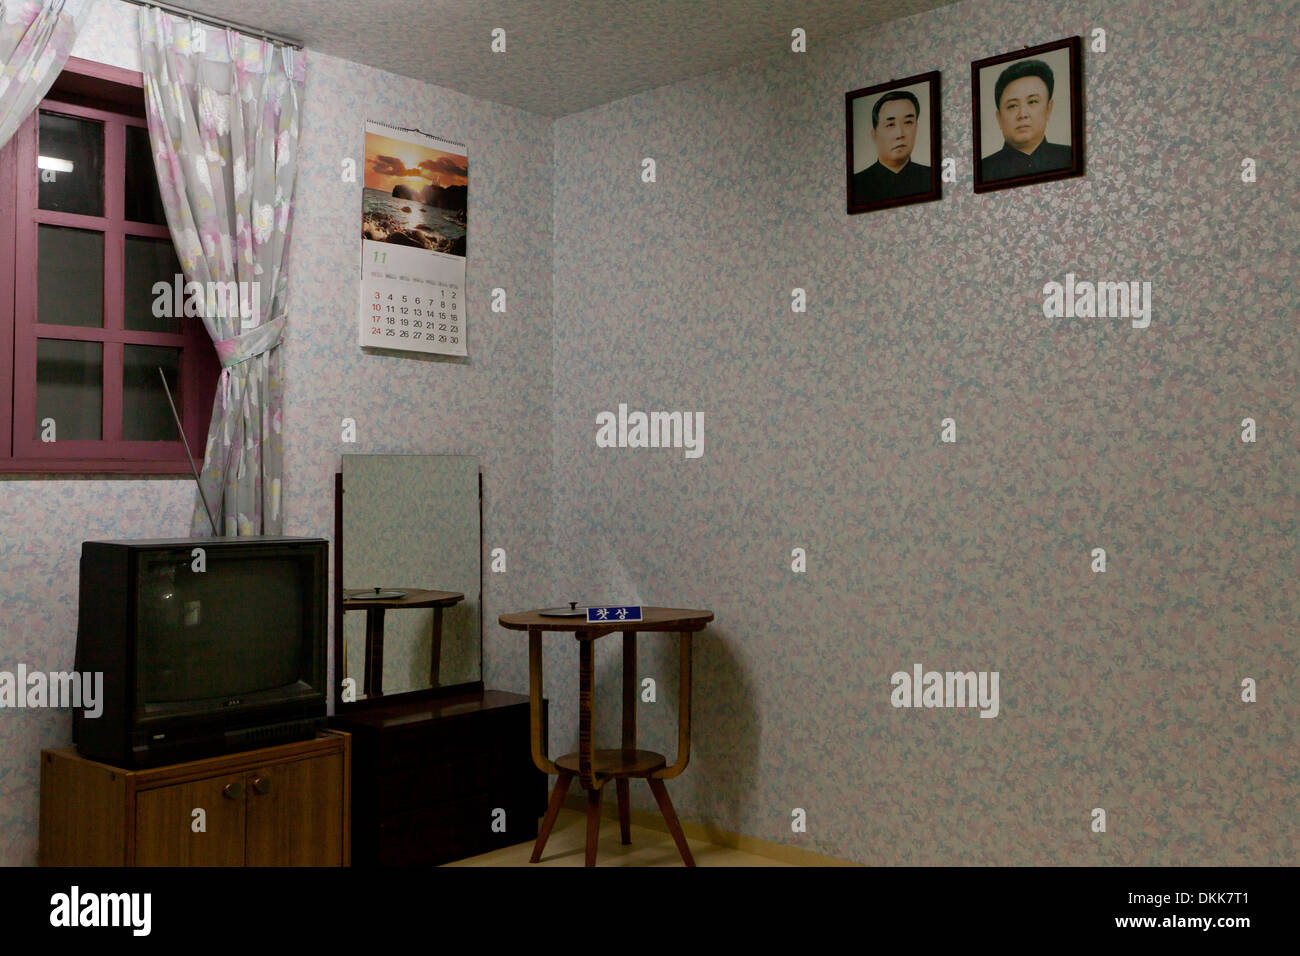 Maqueta del interior de la casa de la familia norcoreana que muestra retratos de Kim Il Sung y Kim Jong Il en la pared Foto de stock